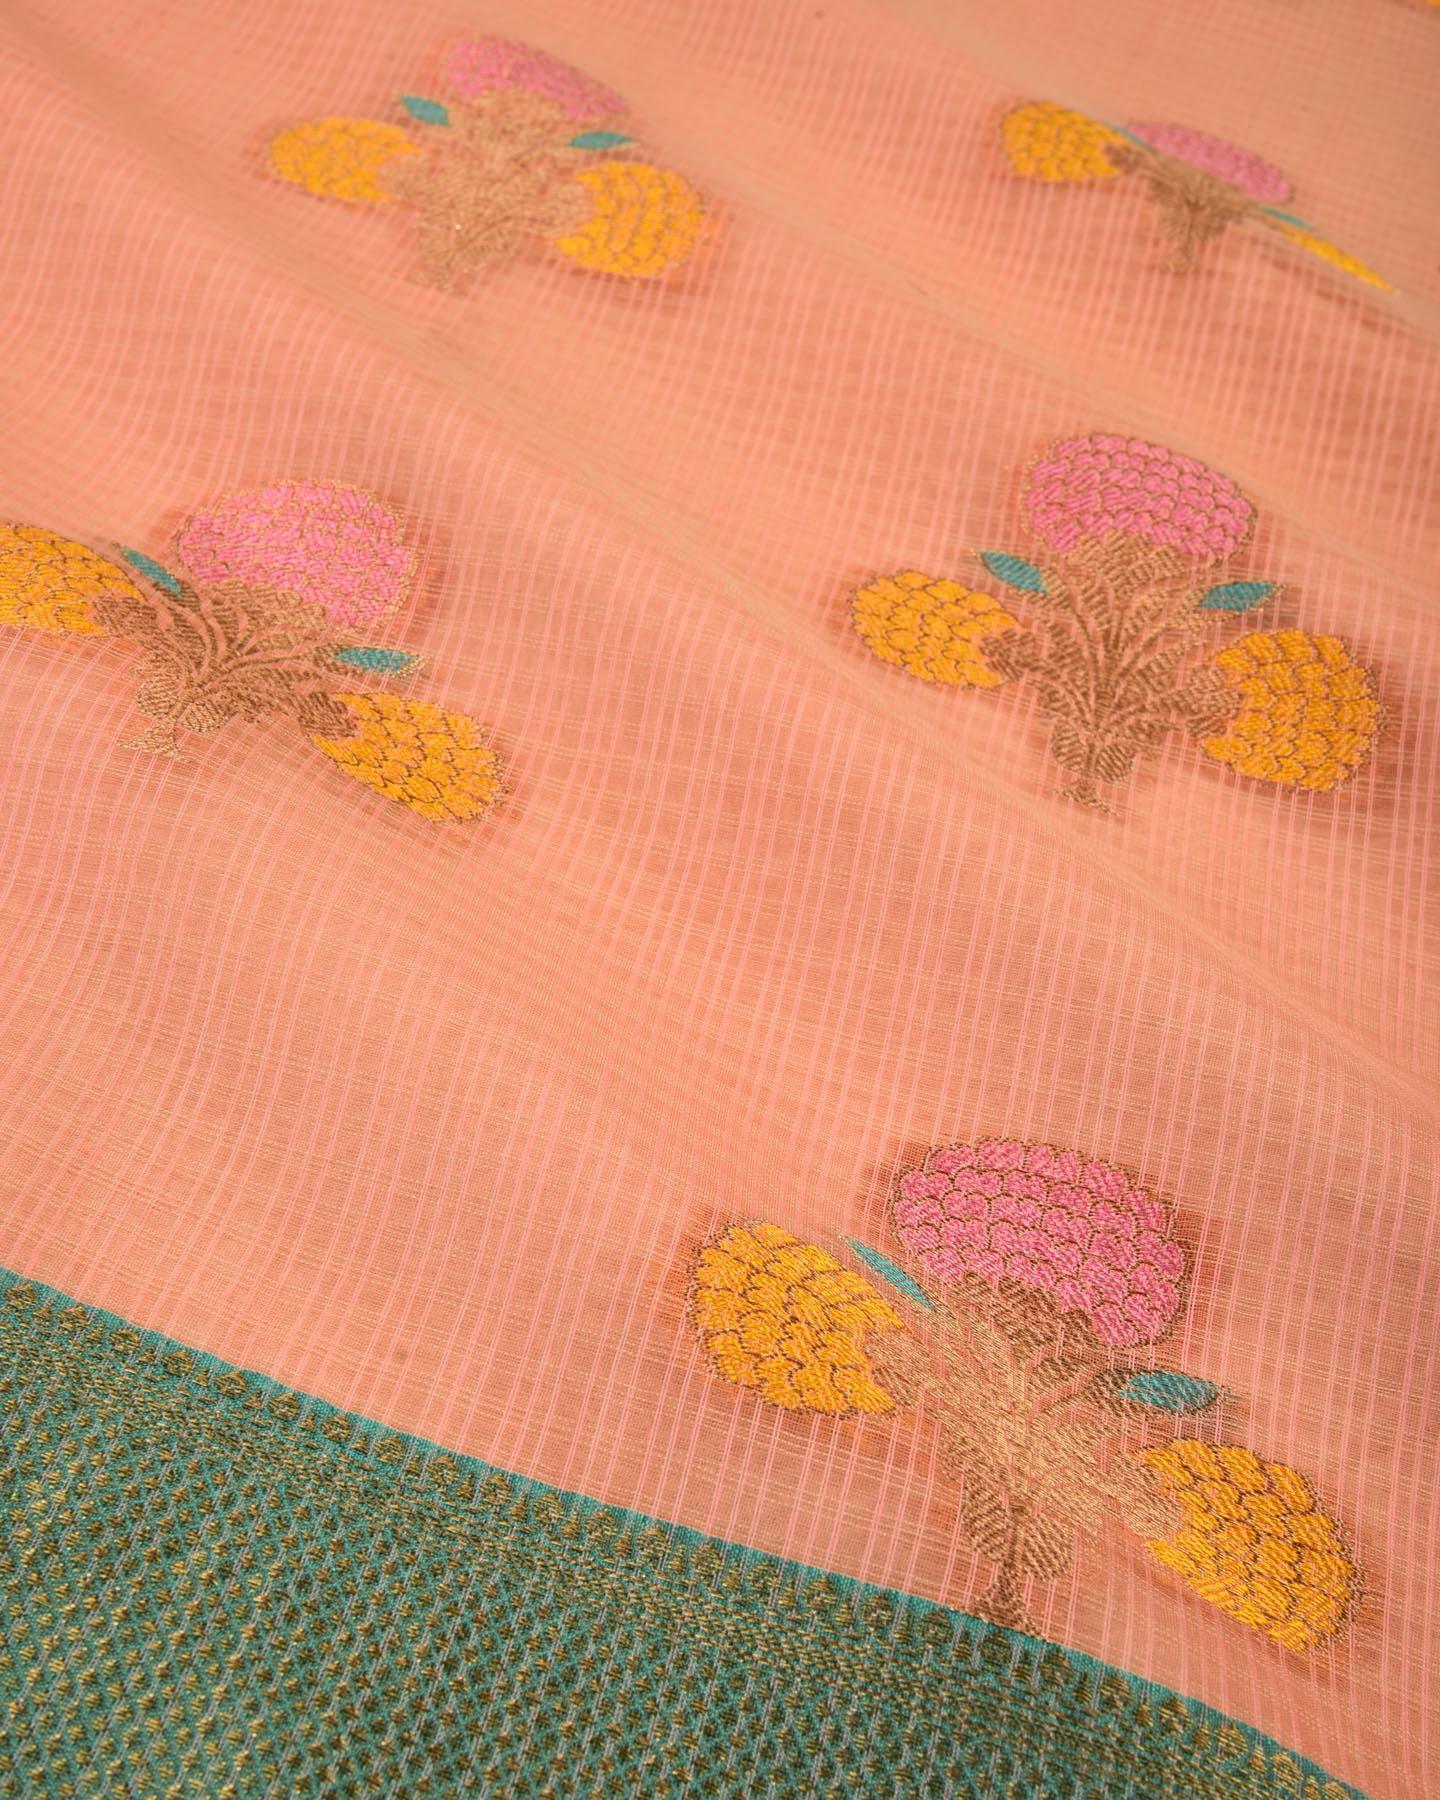 Sunny Peach Banarasi Check Texture 3-Color Weave Cutwork Brocade Woven Cotton Silk Saree - By HolyWeaves, Benares